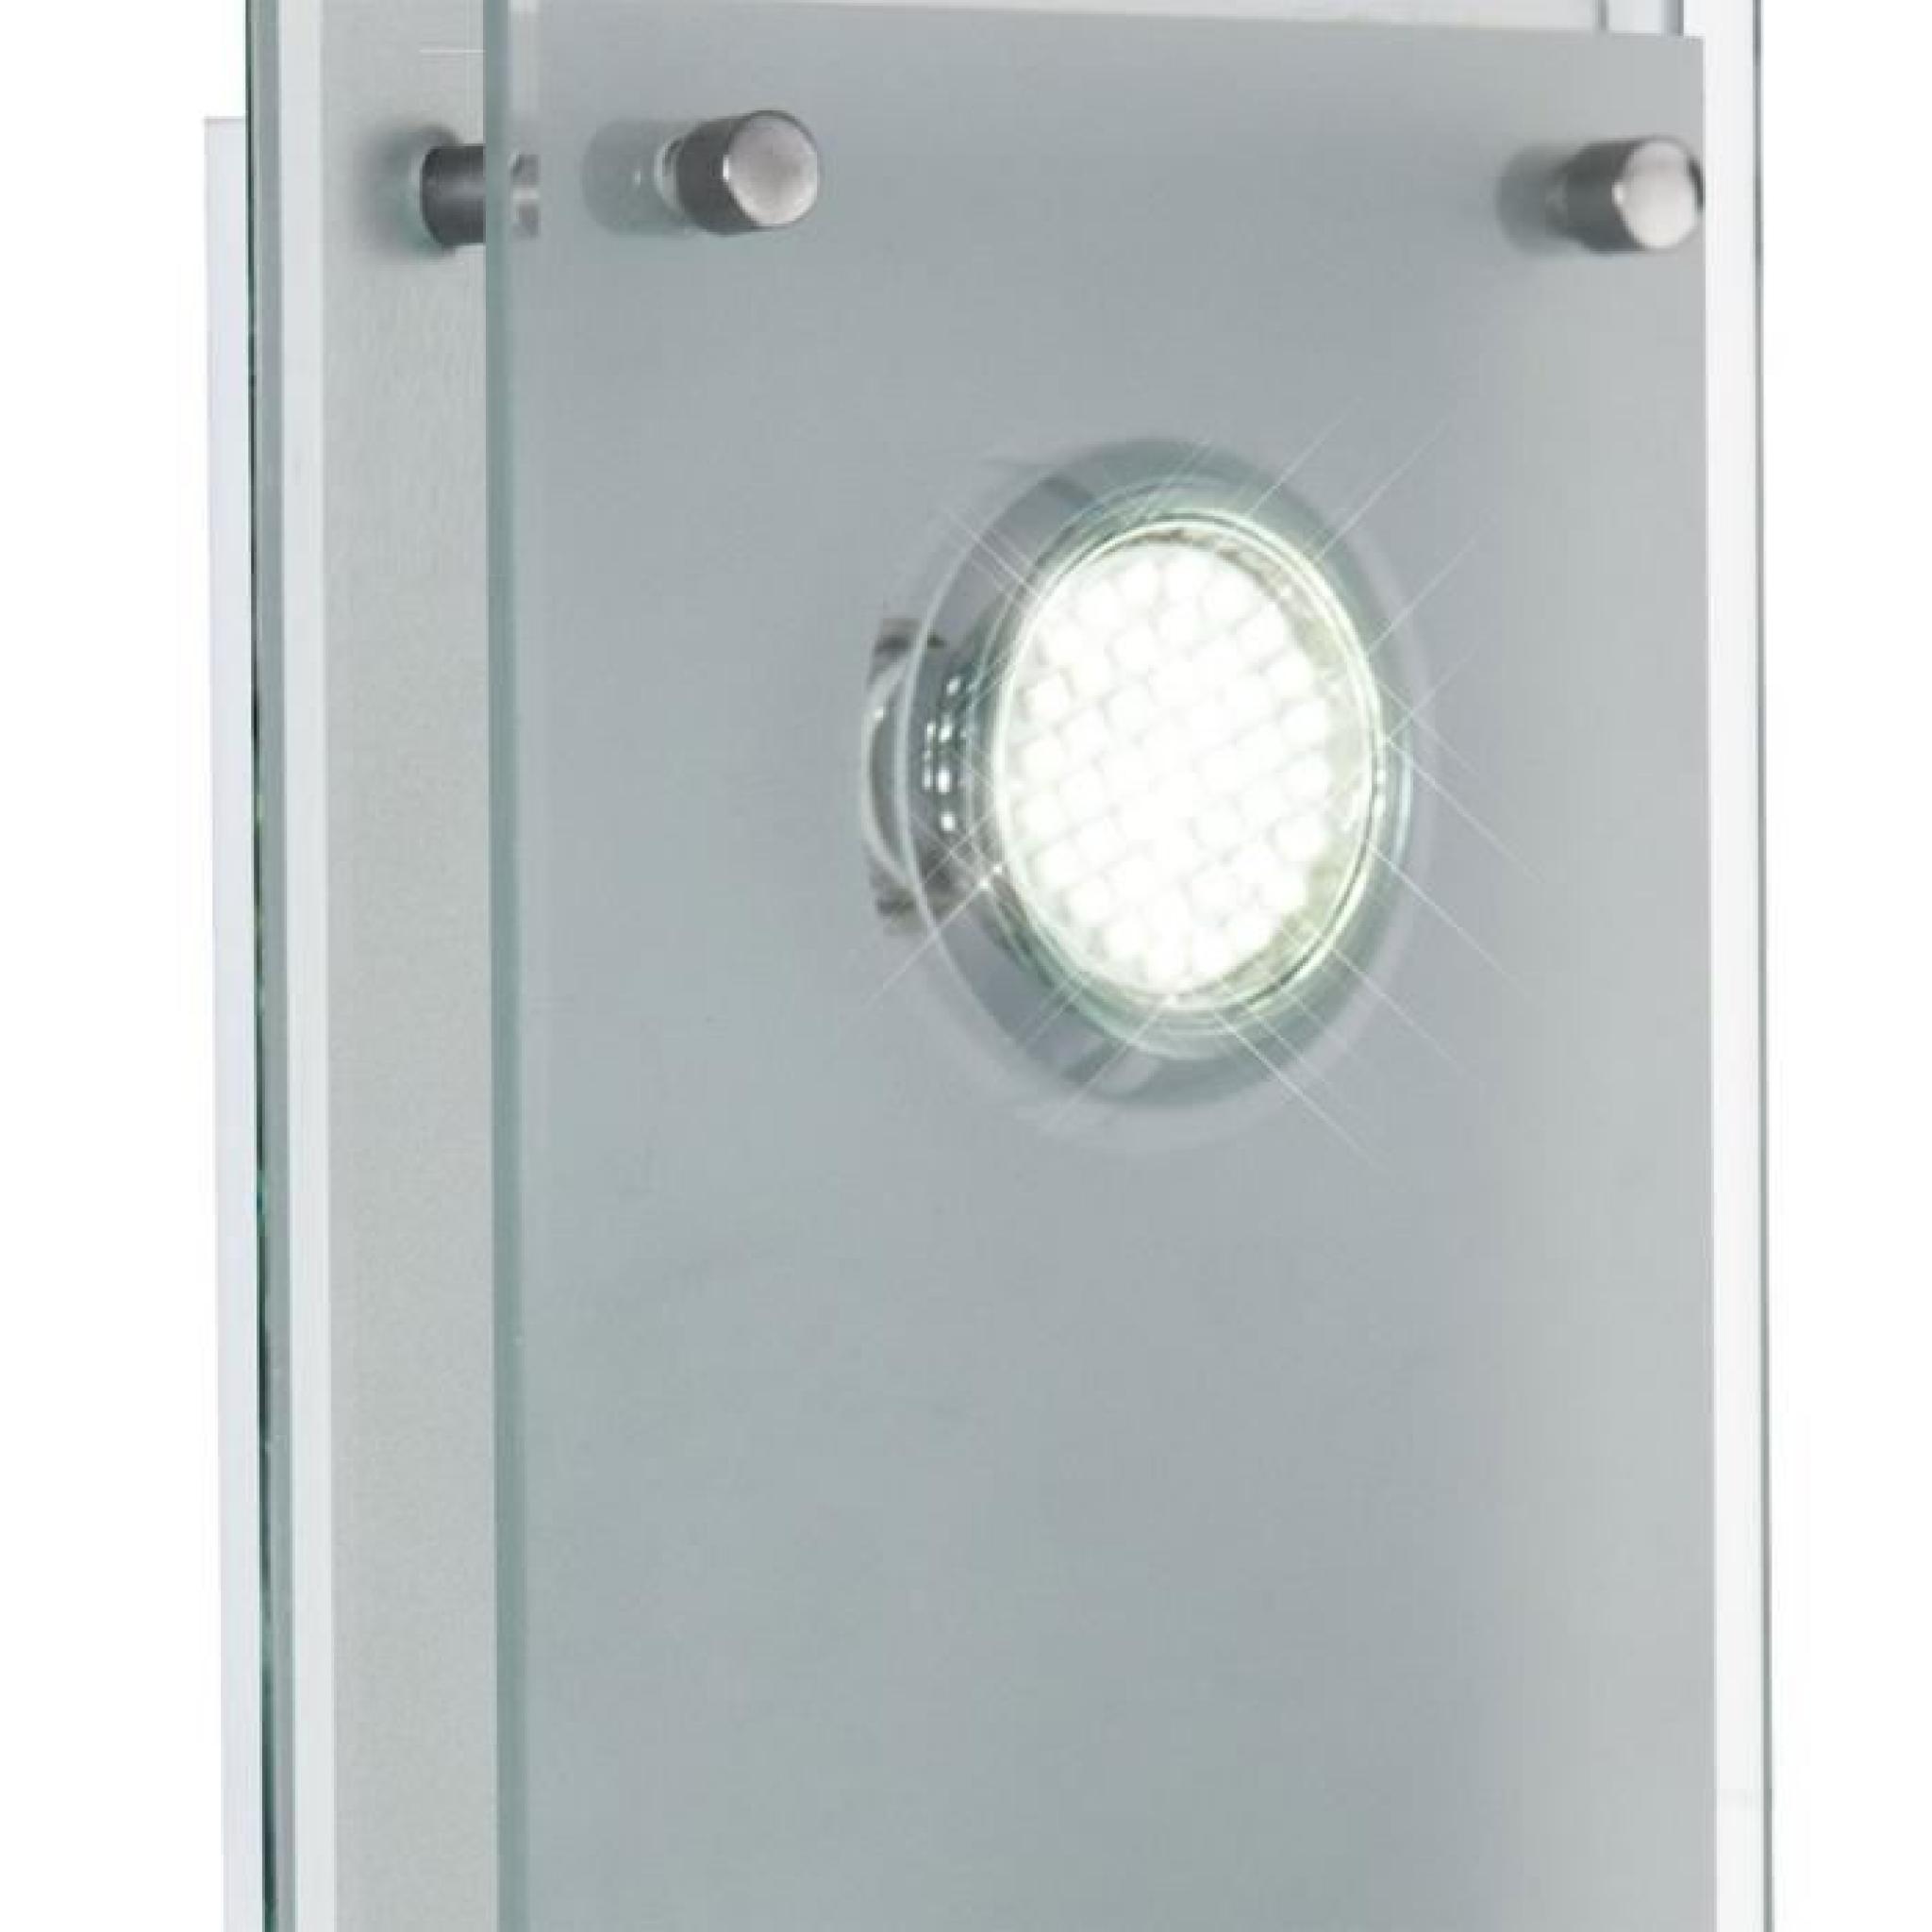 Éclairage plafonnnier DEL 6 watts applique lampe chrome verre clair IP22 3000K Esto 9740030-2 pas cher